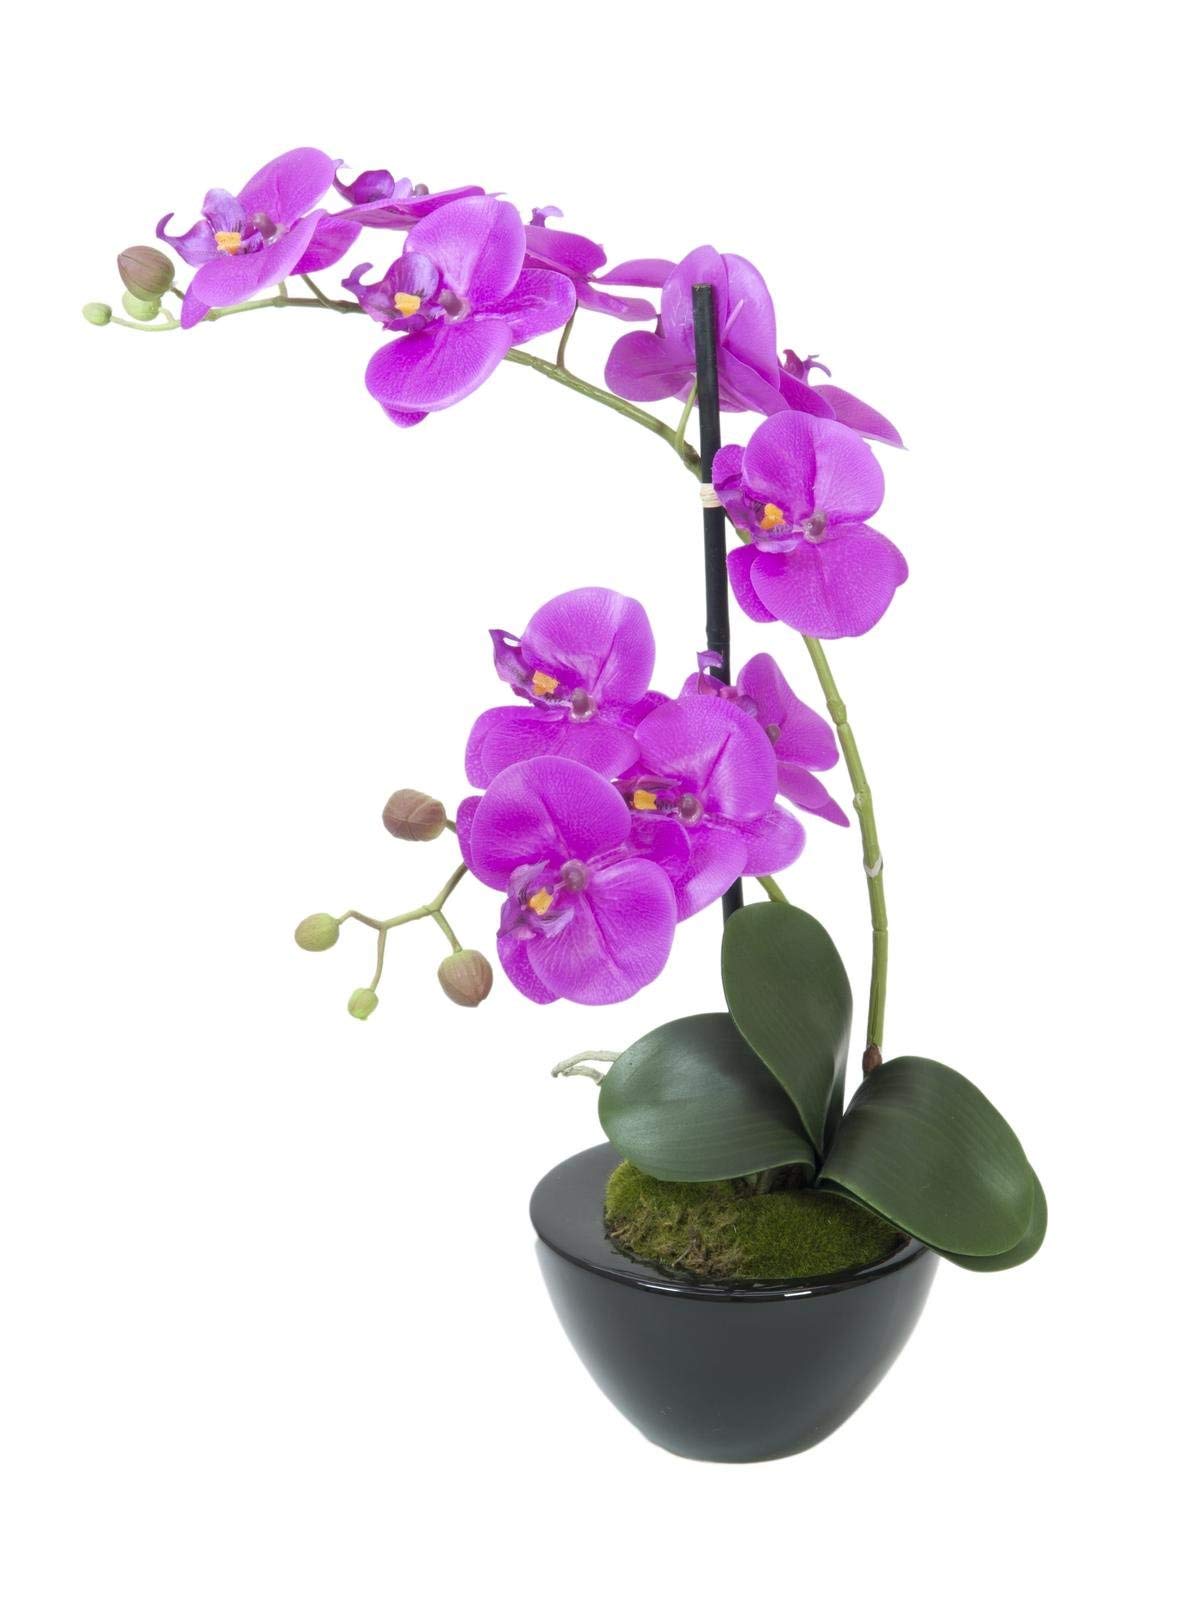 EUROPALMS Orchideen-Arrangement 4, künstlich | Orchidee im Dekotopf